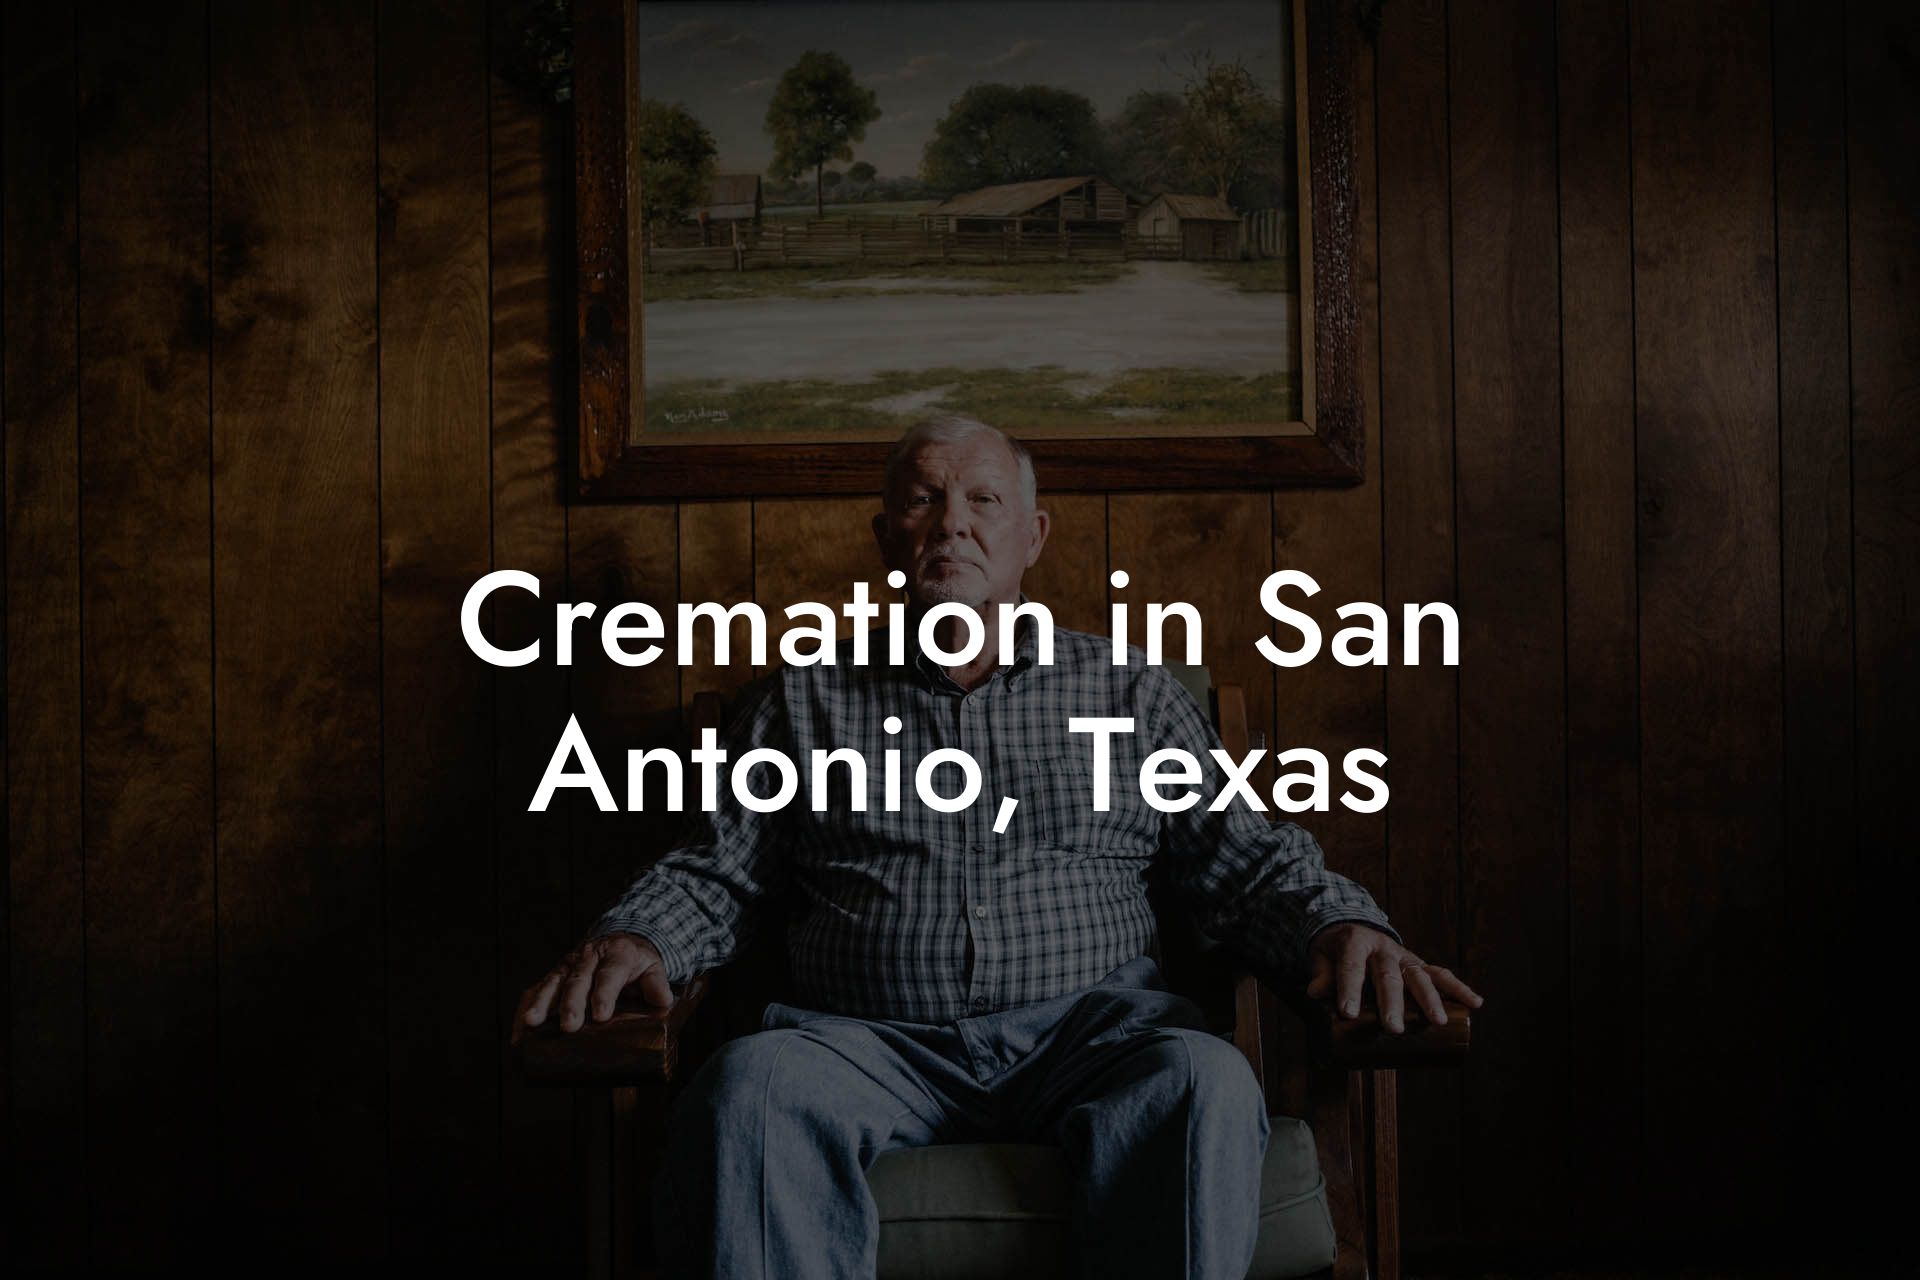 Cremation in San Antonio, Texas